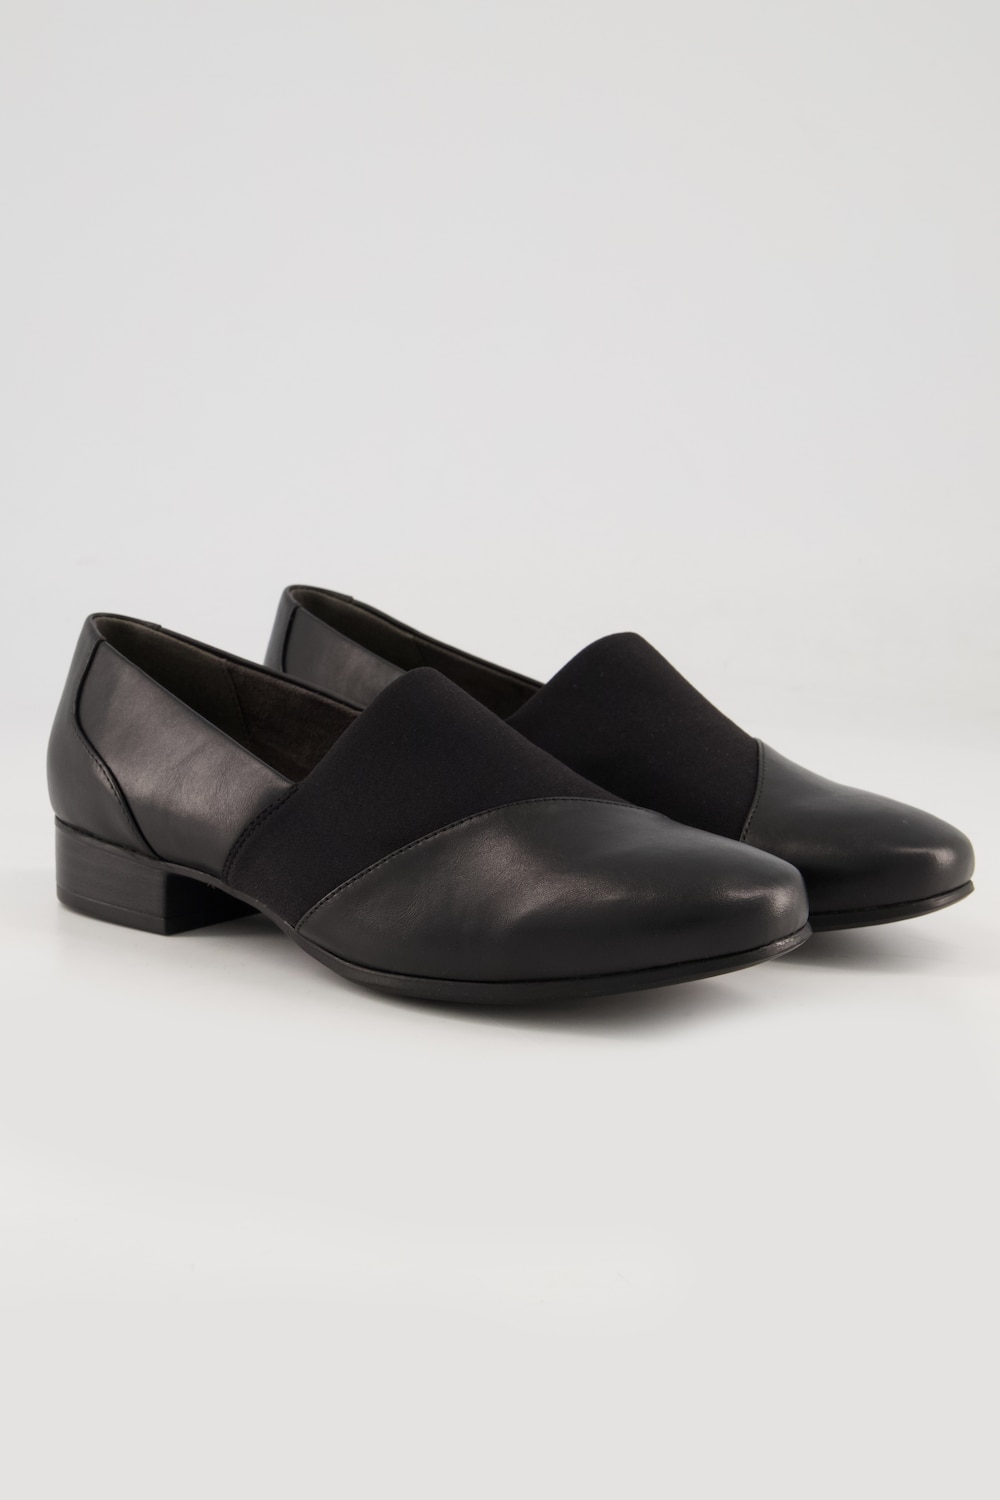 Grote Maten Jana Shoes, Dames, zwart, Maat: 40, Overige/Synthetische vezels, Ulla Popken